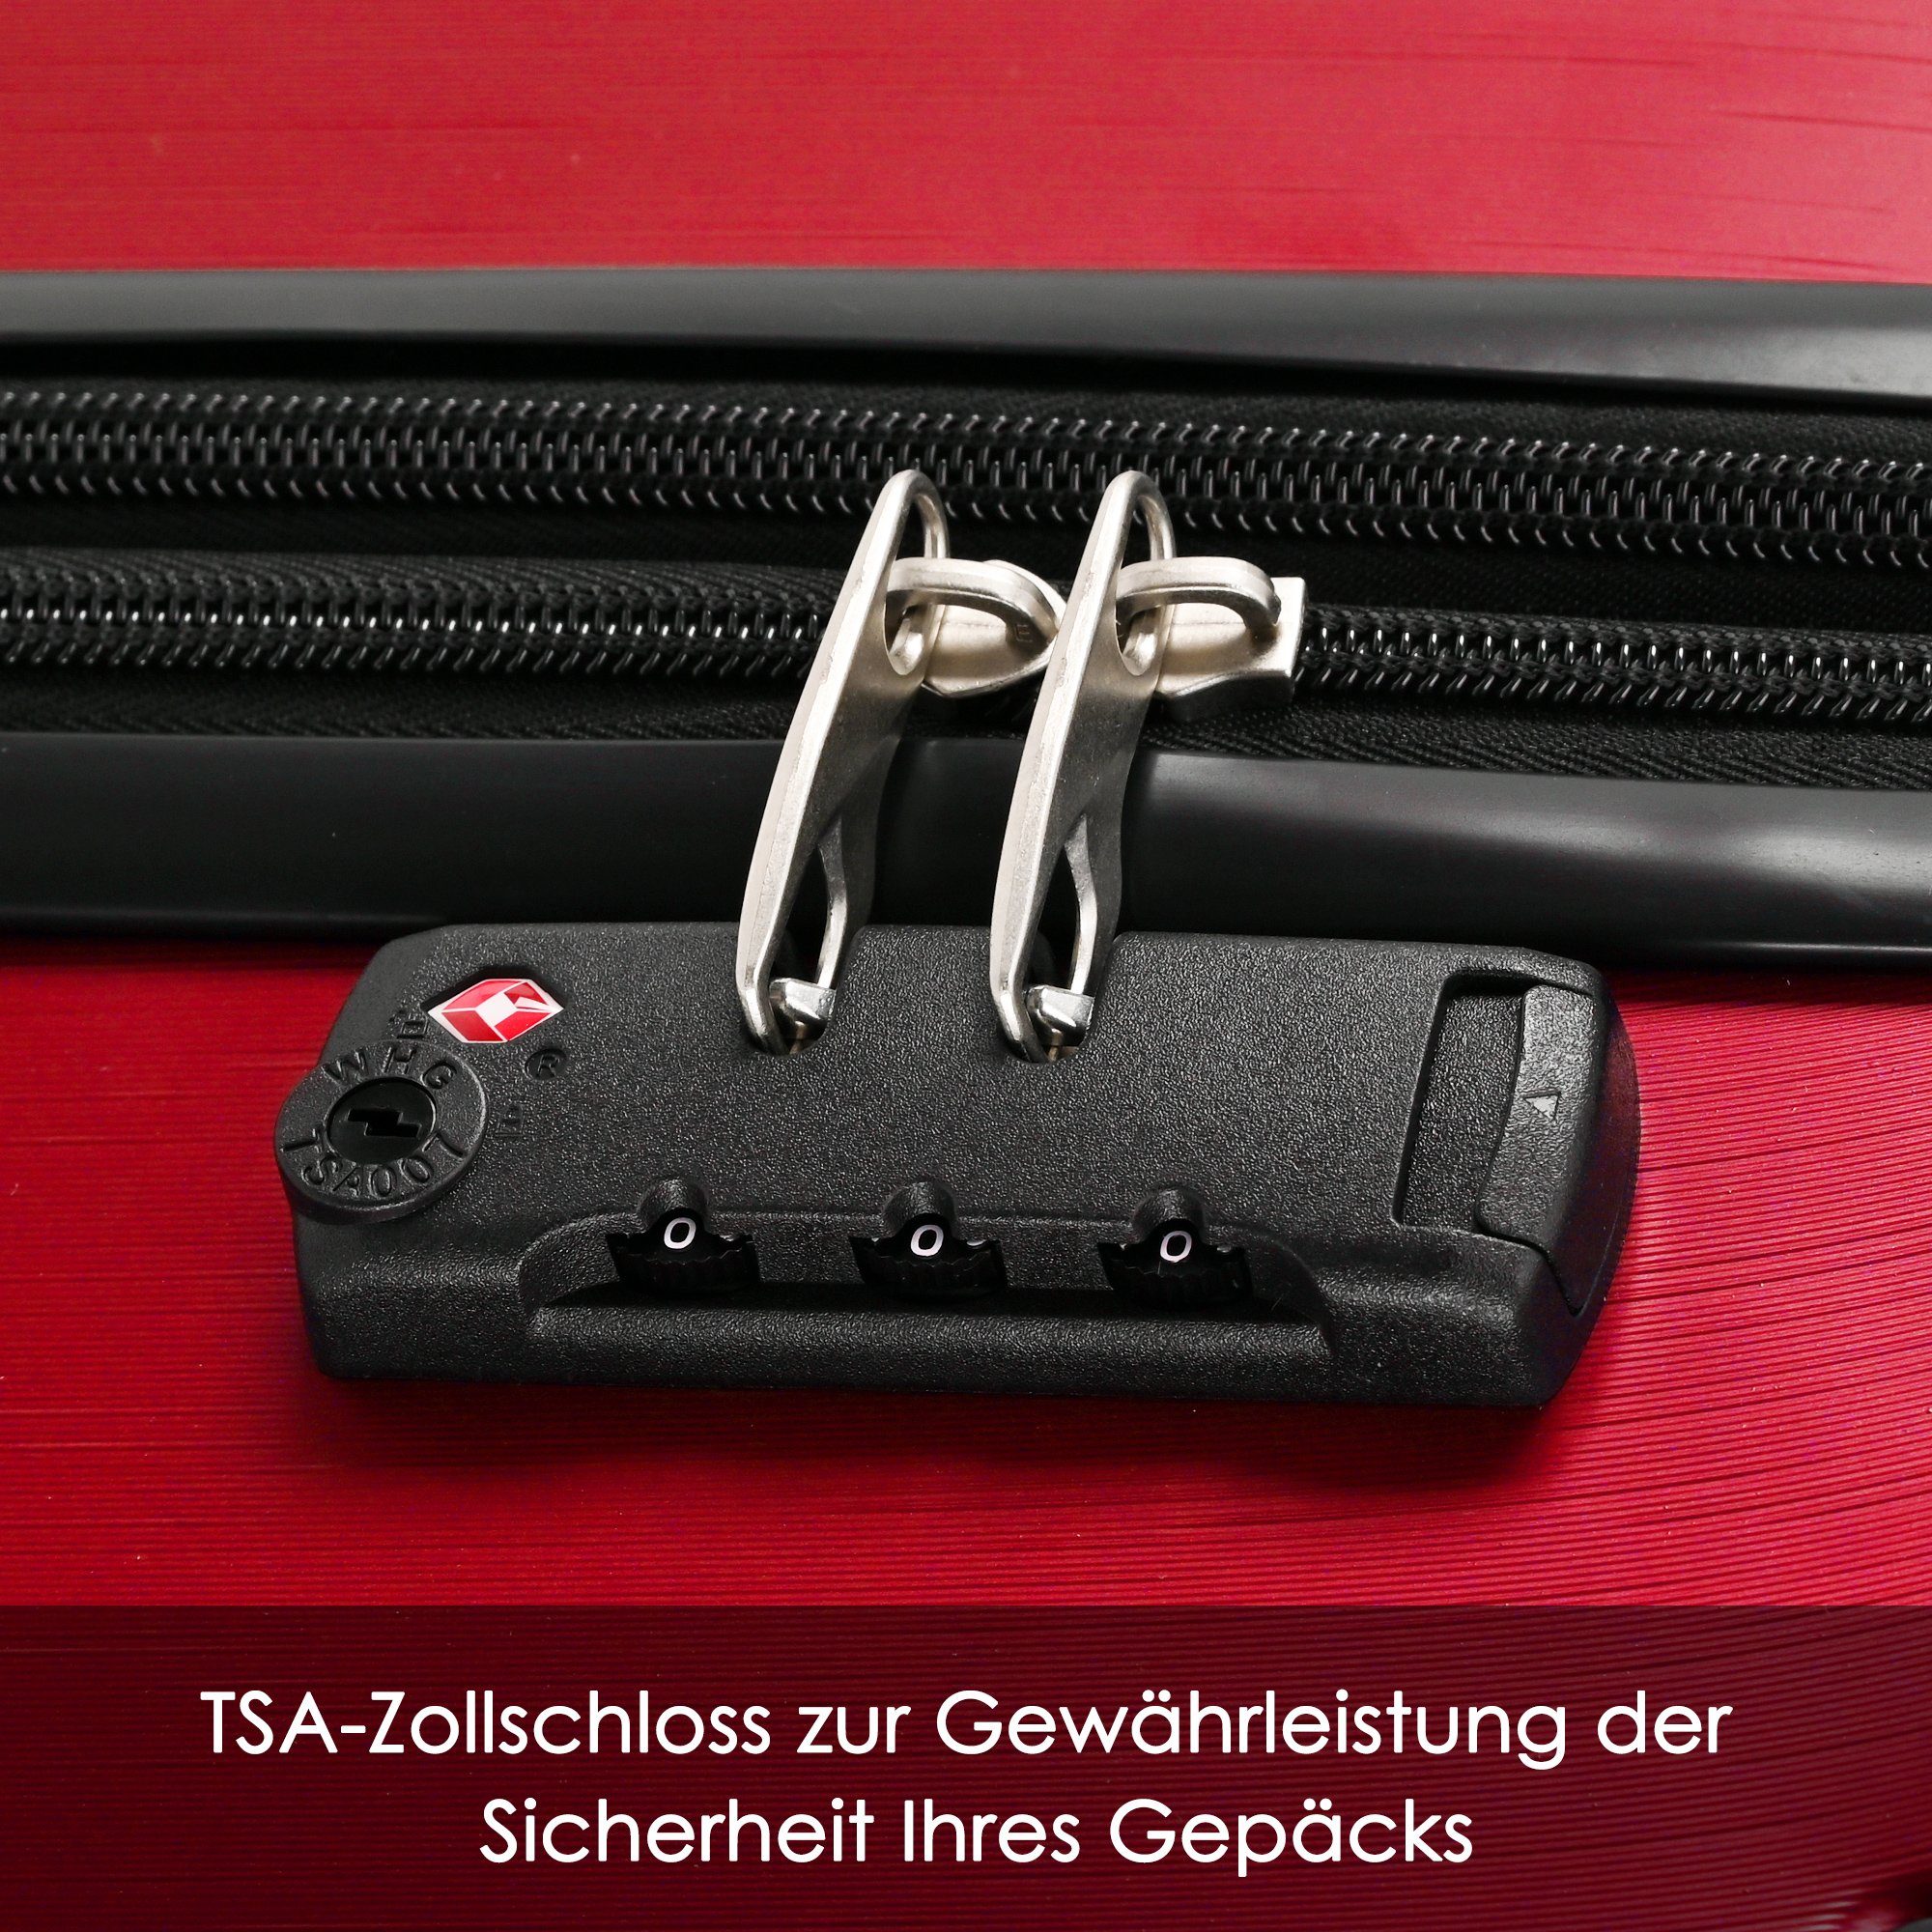 TSA Handgepäck 56.5*37.5*22.5 Handgepäckkoffer ABS-Material, Reisekoffer, 4 Hartschalen-Koffer, Rollkoffer, rot Zollschloss, EXTSUD Rollen,